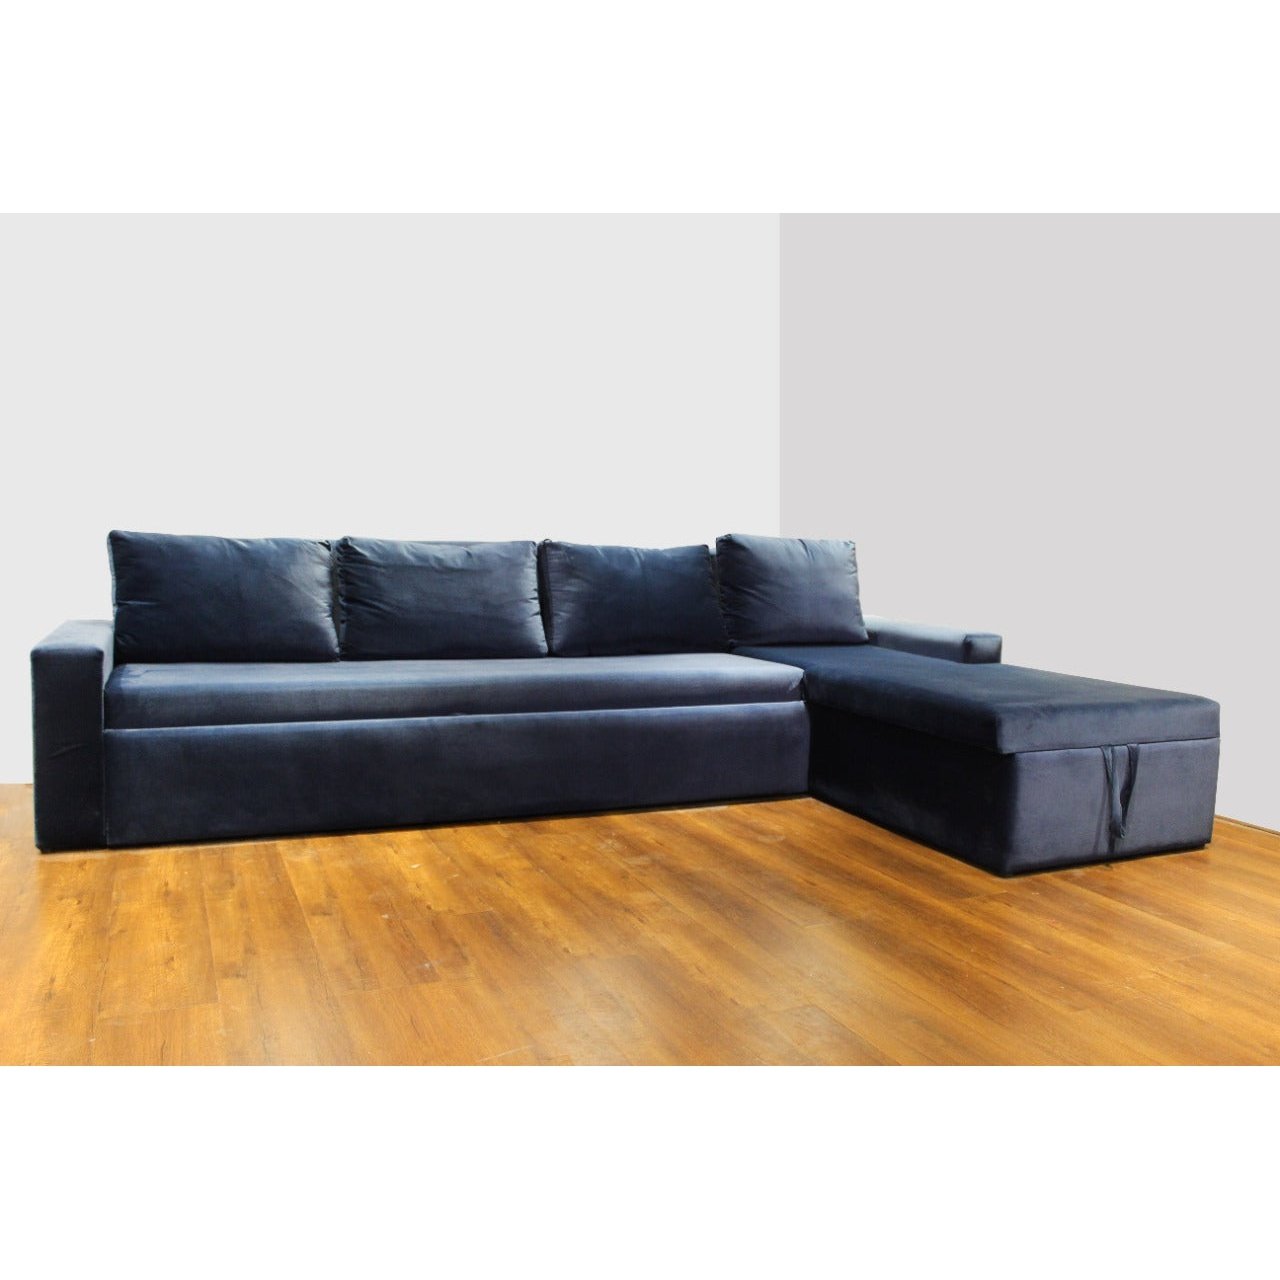 NM-PABLO EXCLU, L SHAPE SOFA CUM BED Mobel Furniture